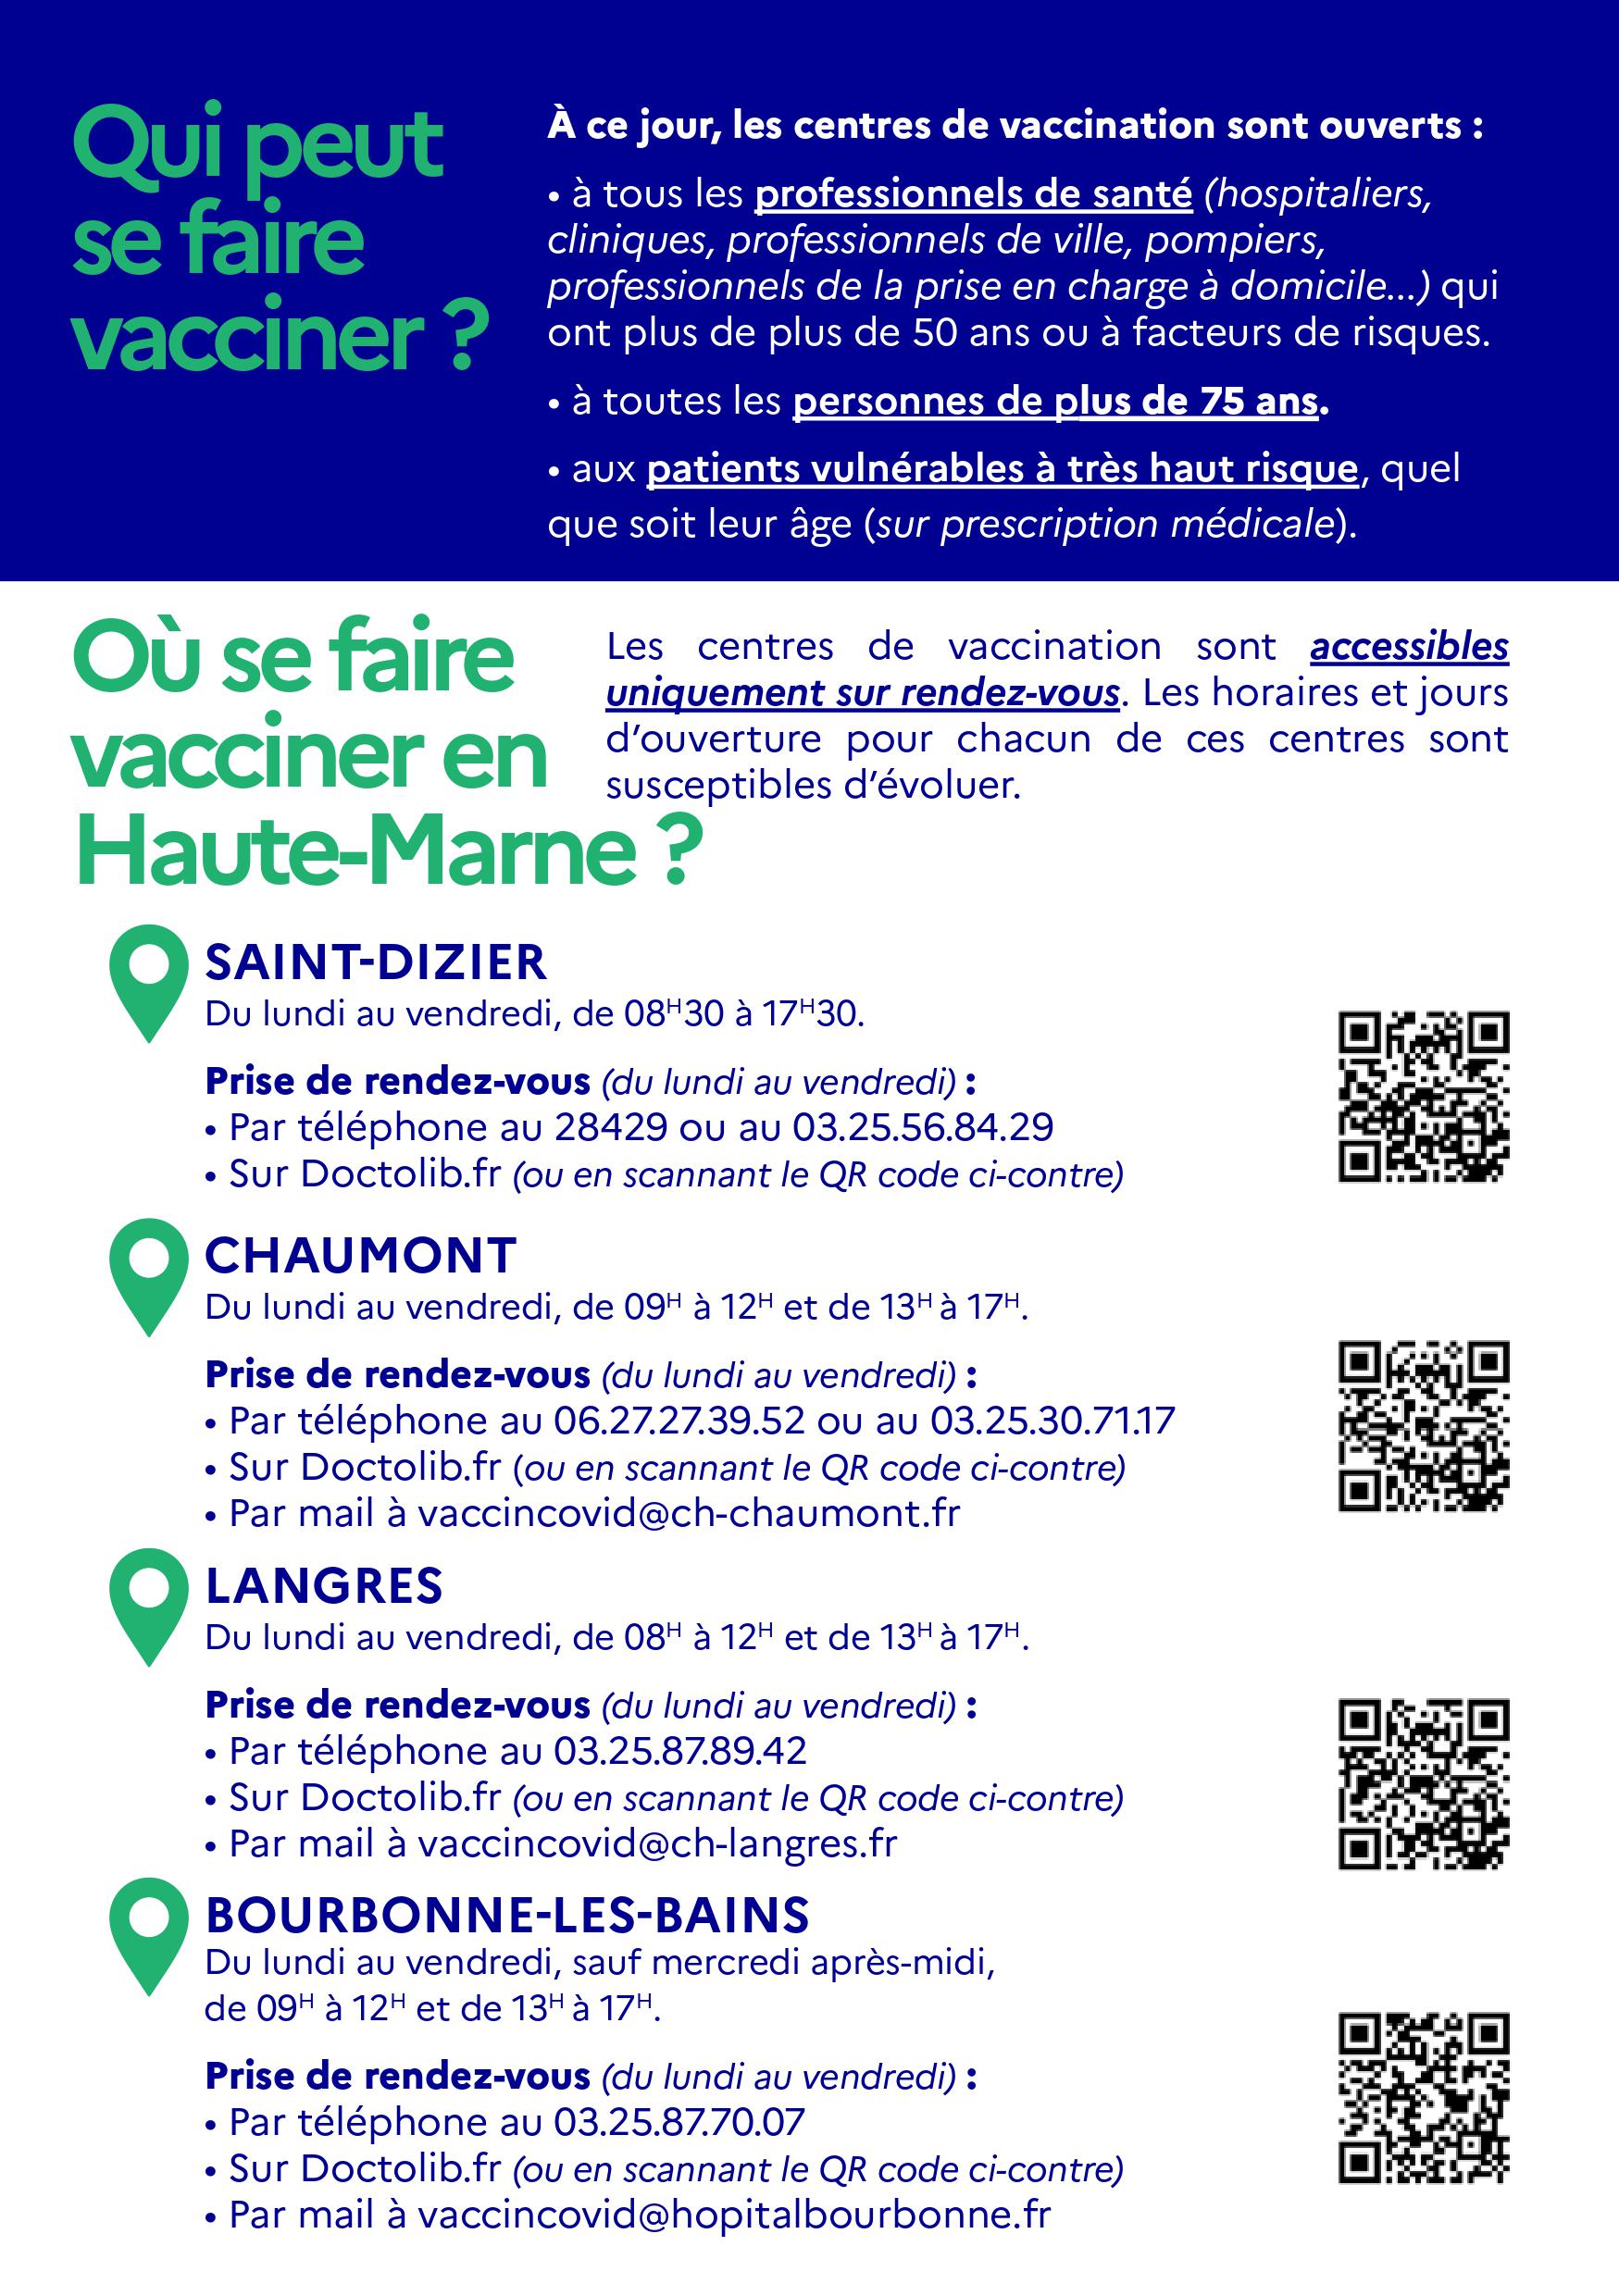 Centres de vaccinations COVID-19 en Haute-Marne